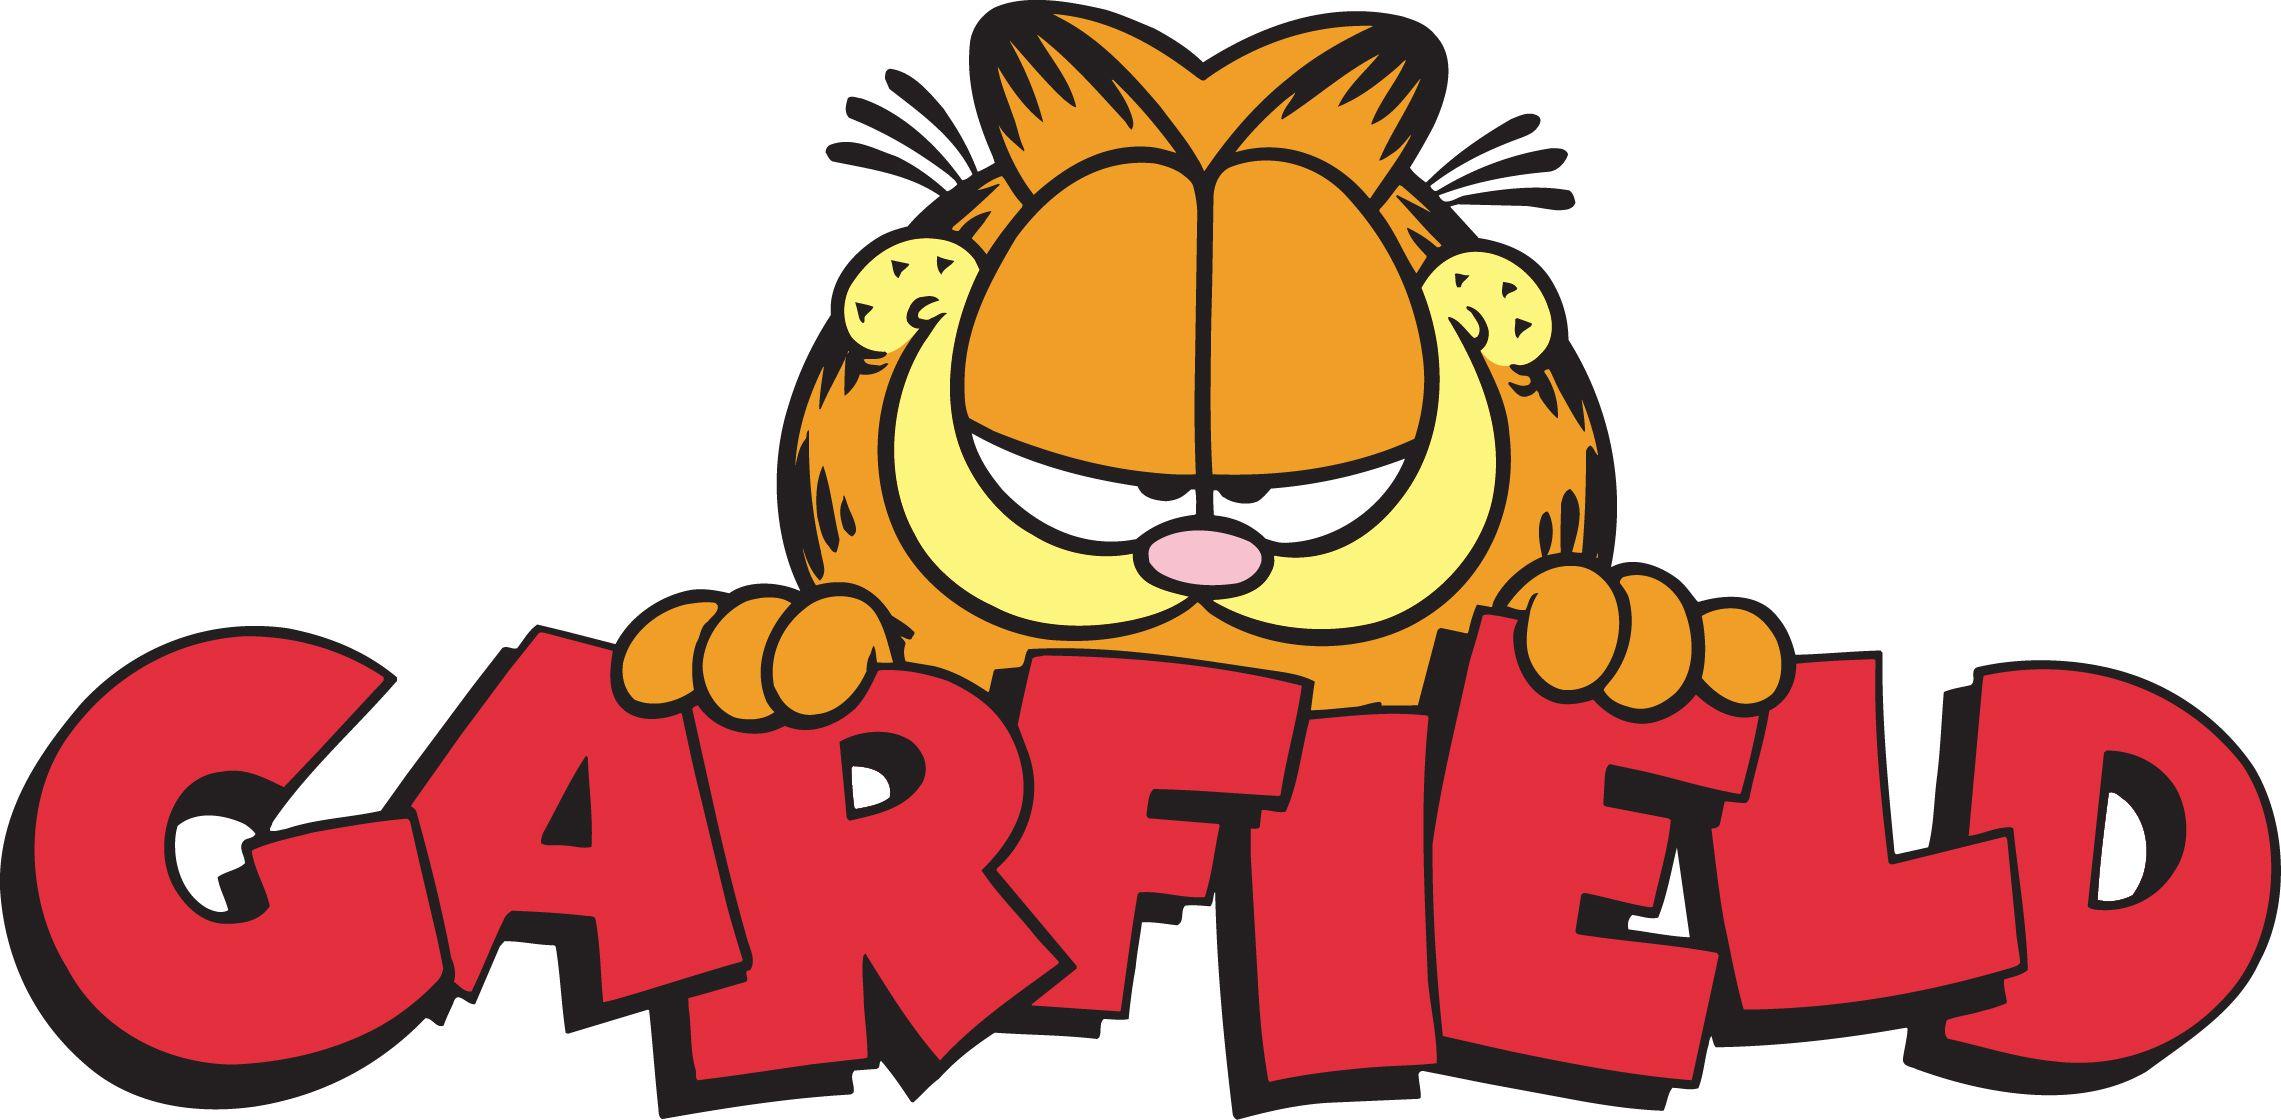 Garfield Logo - hobbyDB